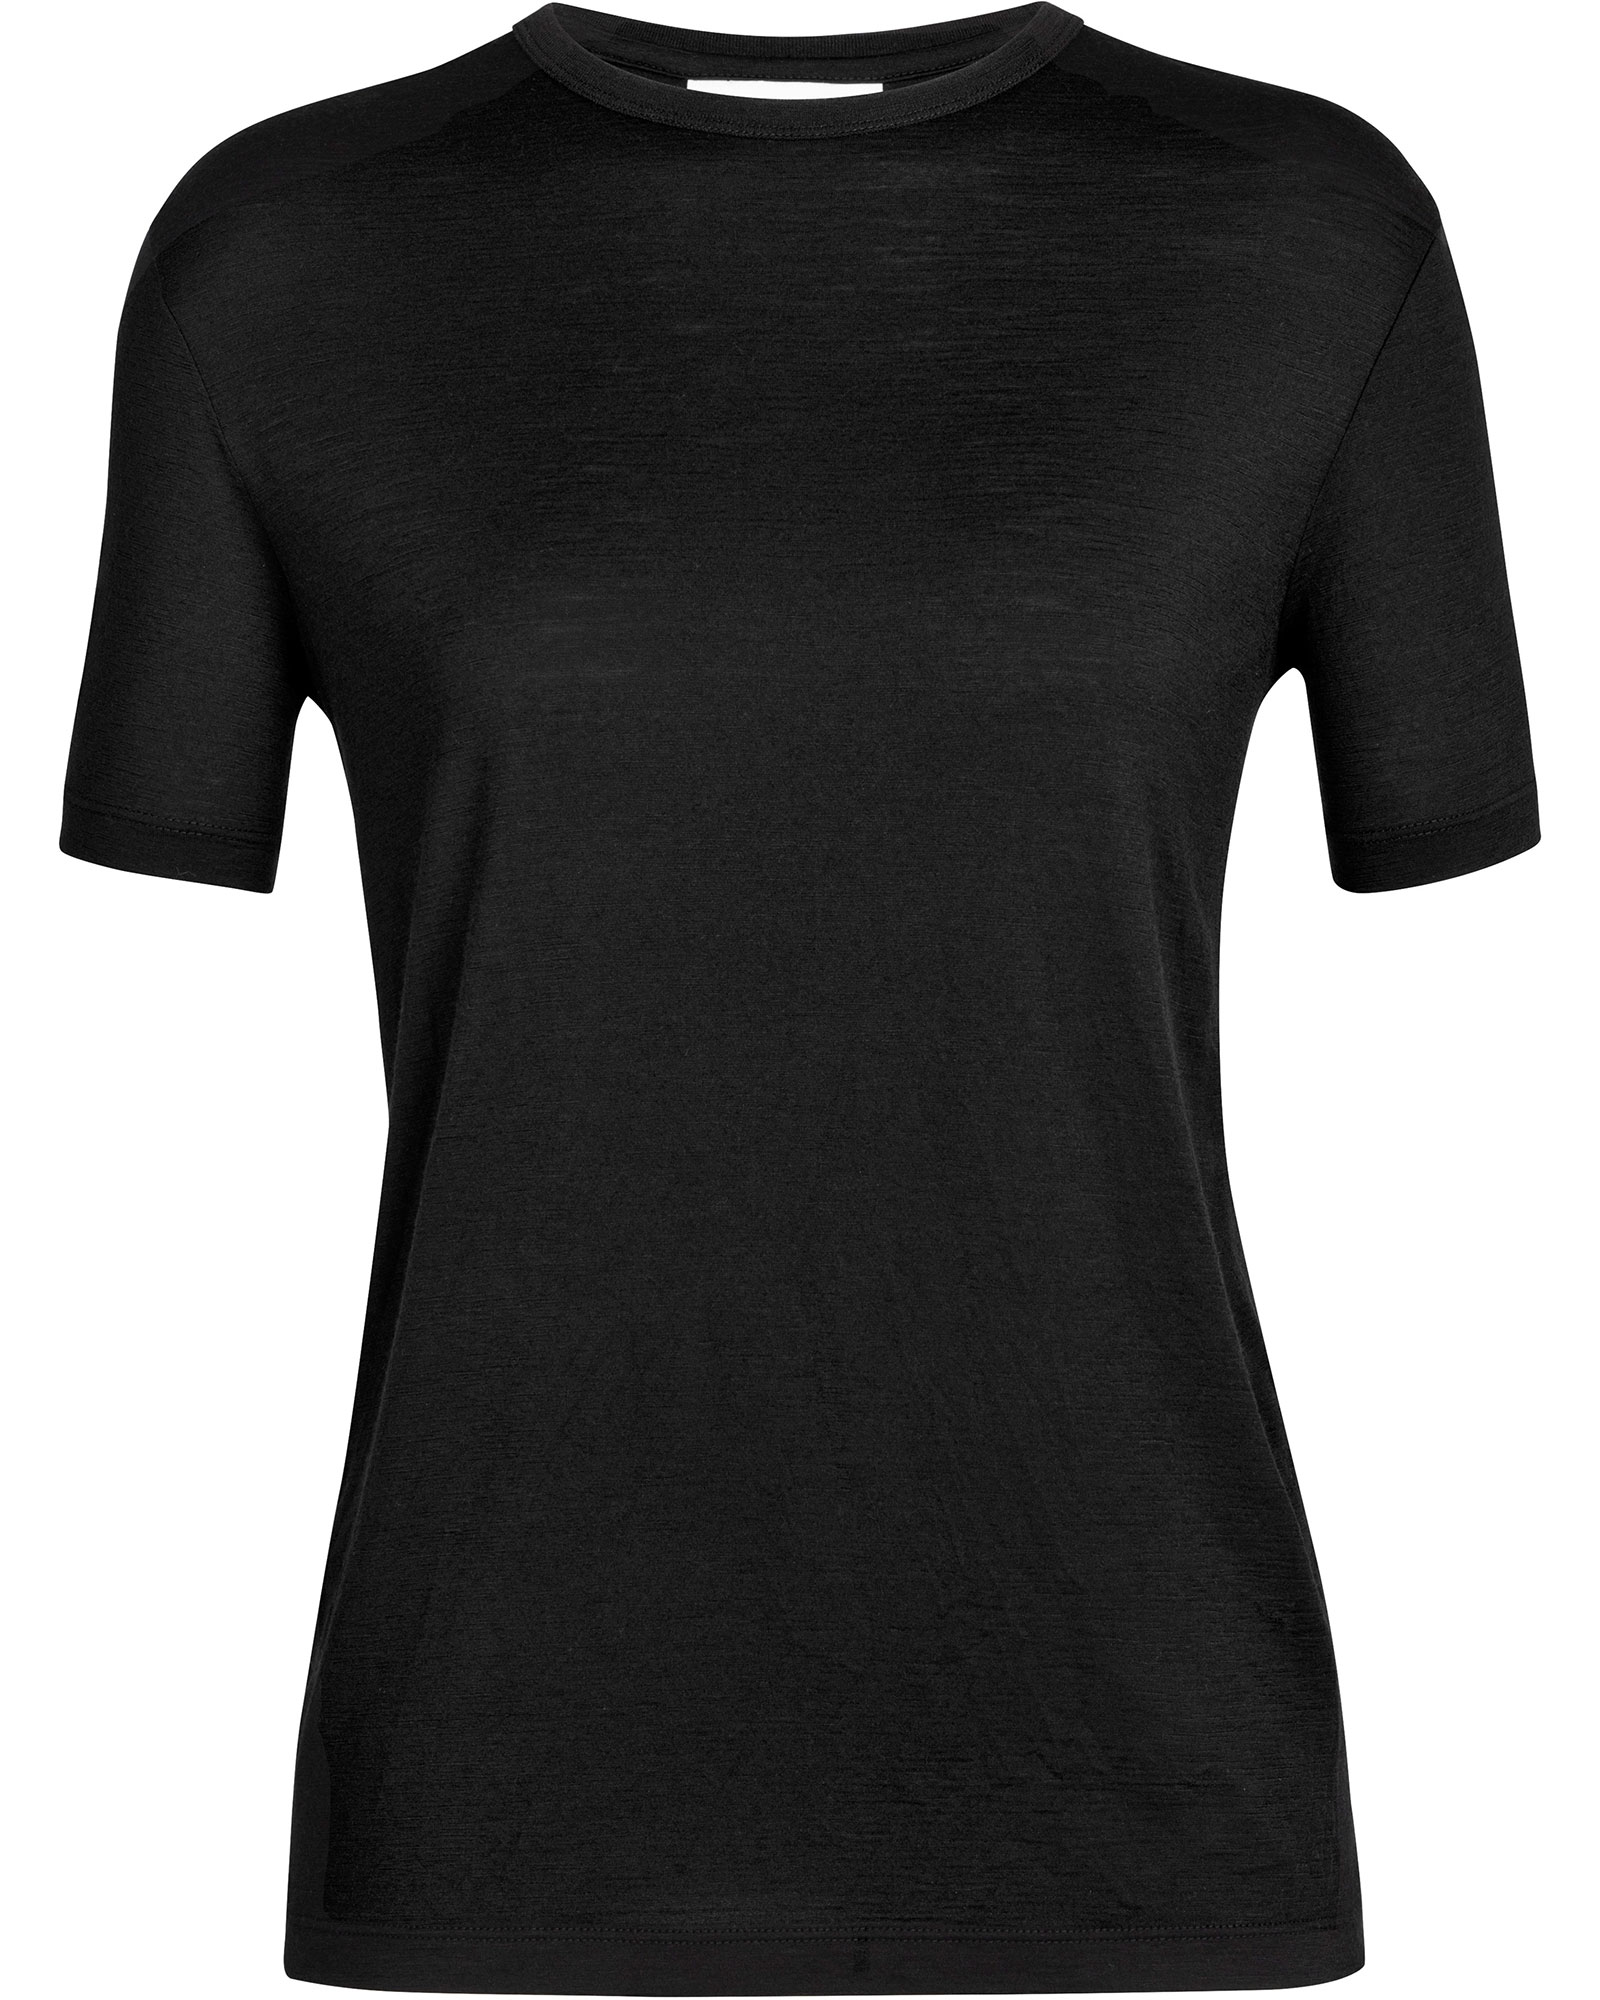 icebreaker Women’s Granary Merino T Shirt - black S